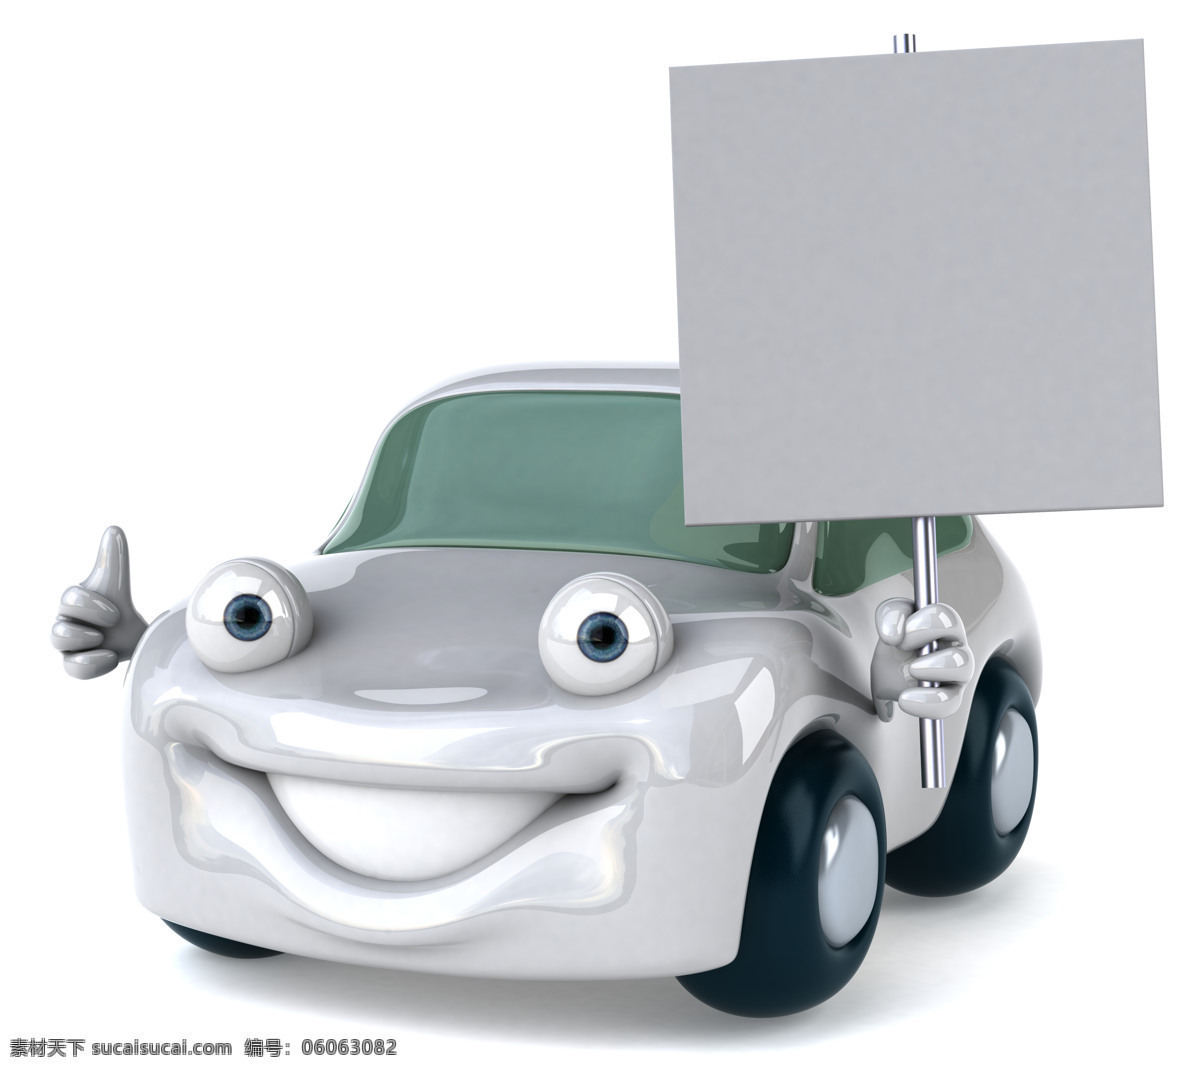 3d 3d设计 白板 高清图片 广告牌 卡通 空白 汽修 小汽车 设计素材 模板下载 小车 修理 维修 笑脸 矢量图